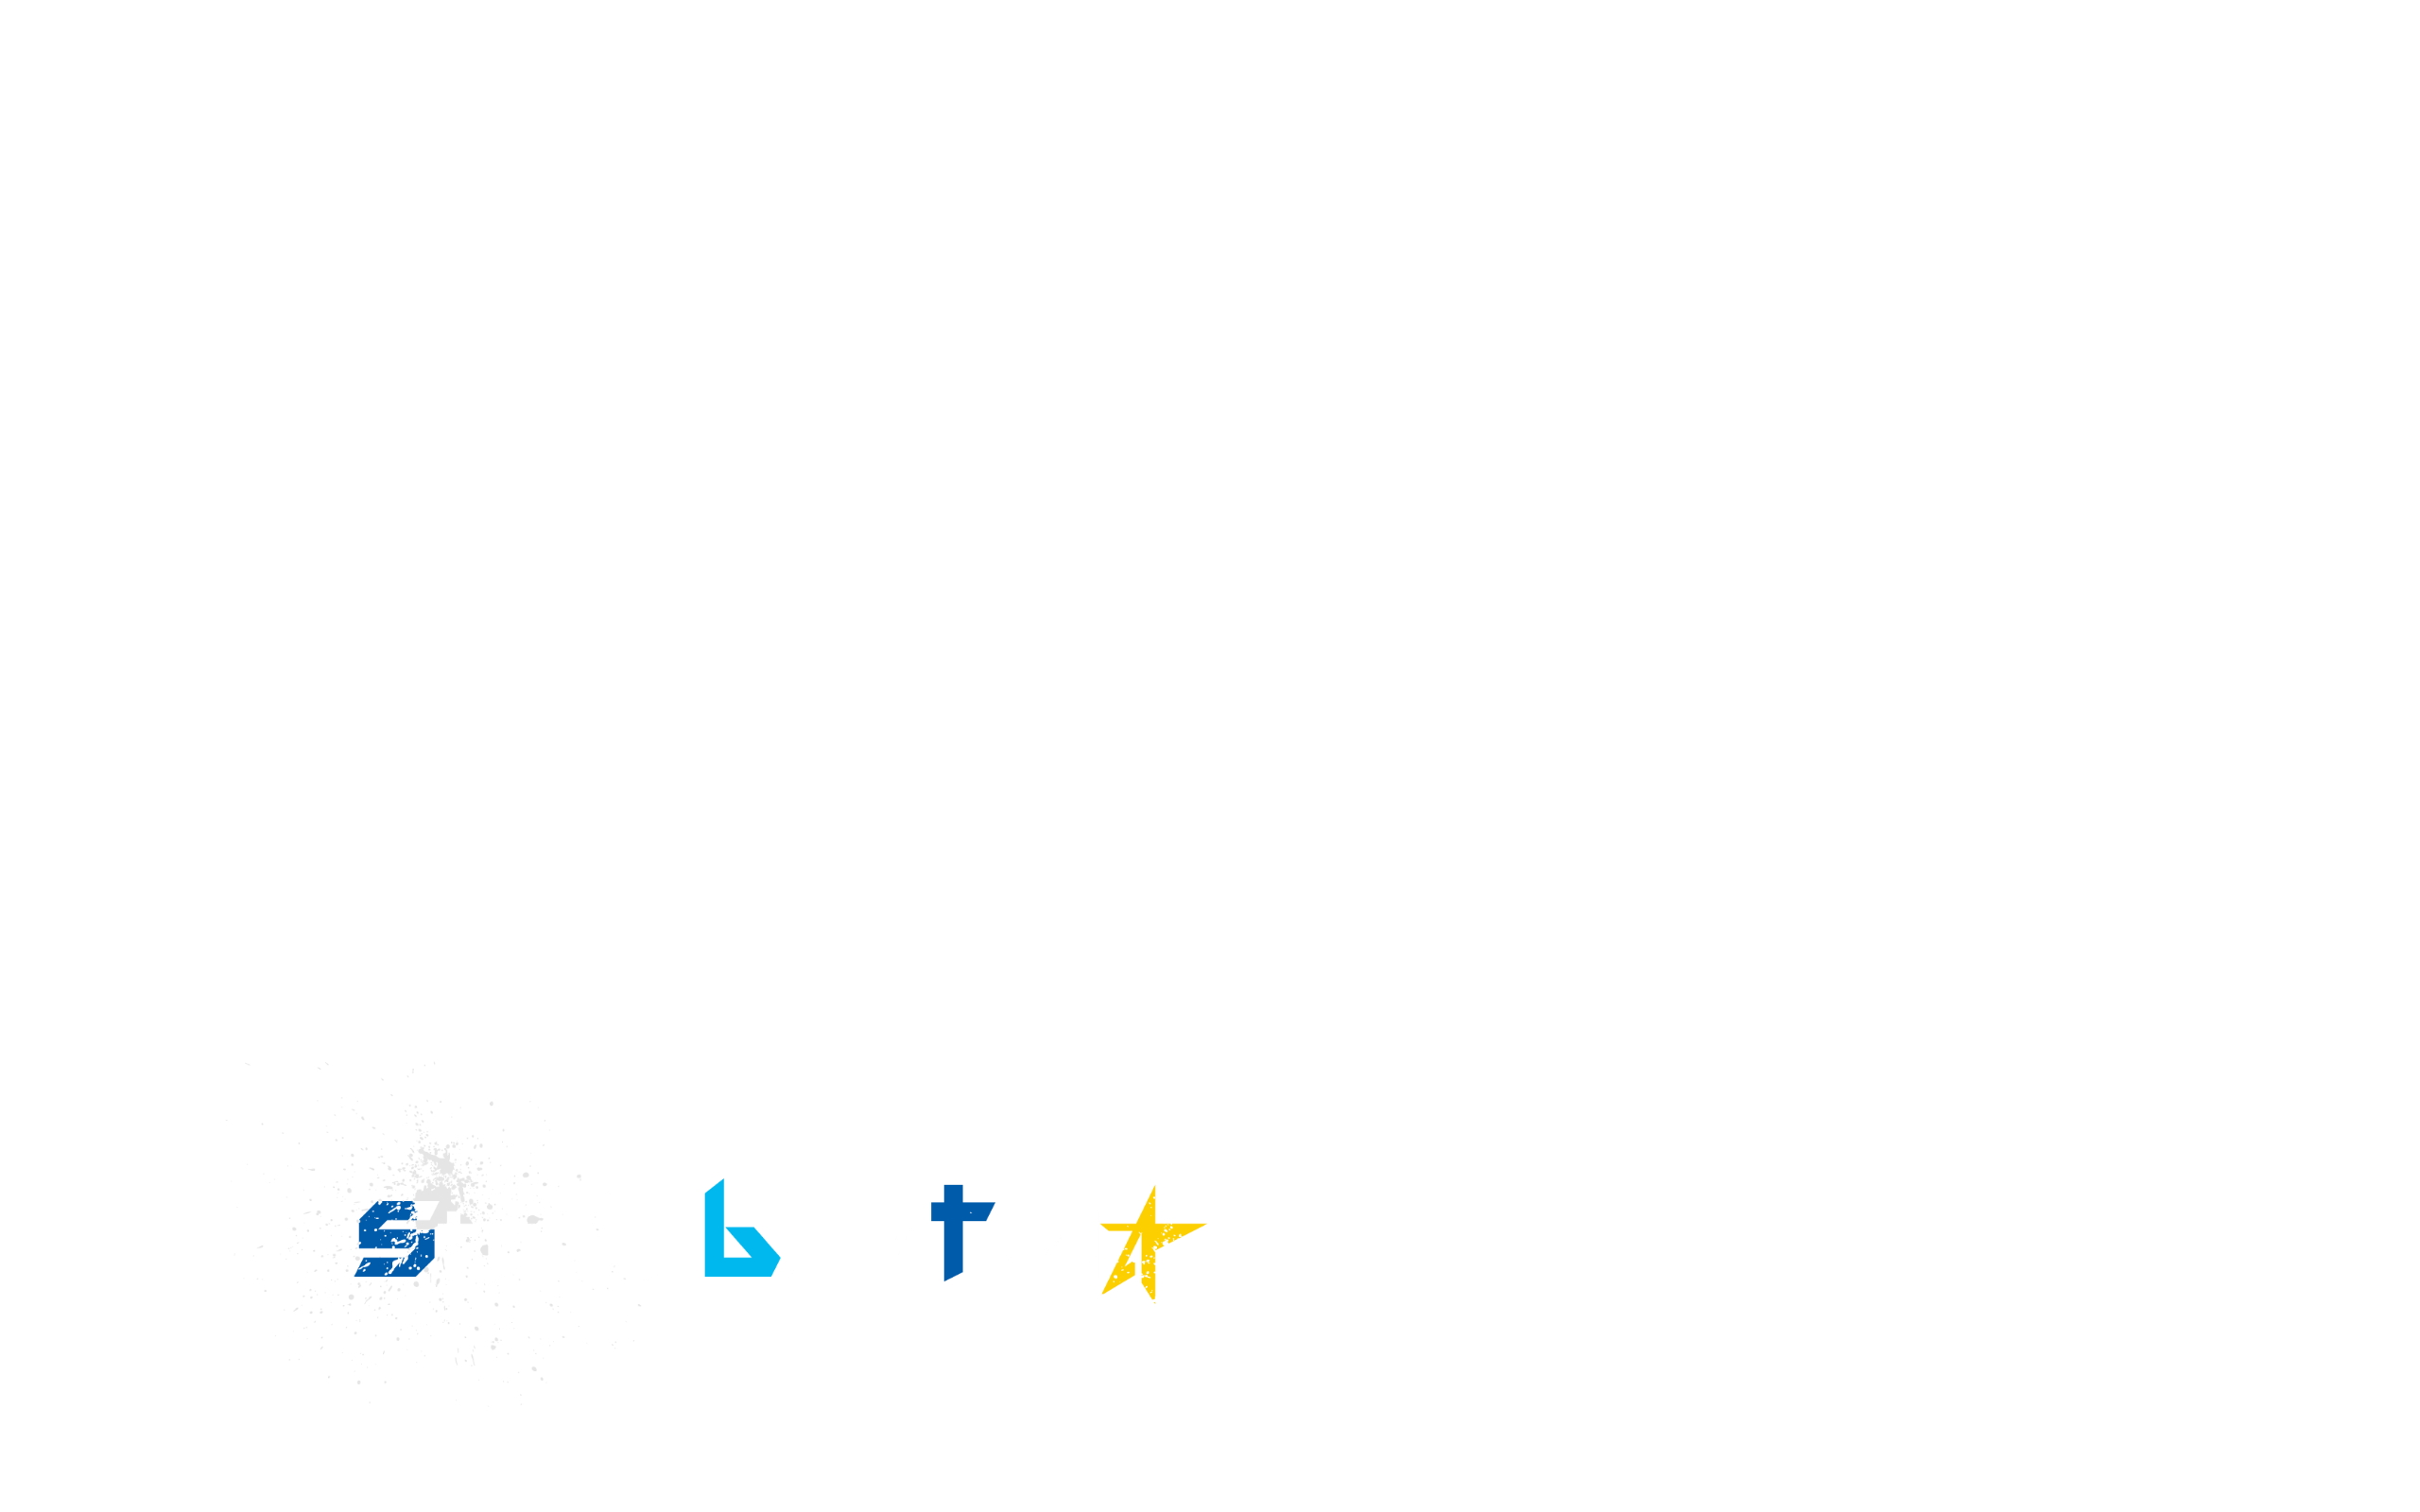 starlit blue topia